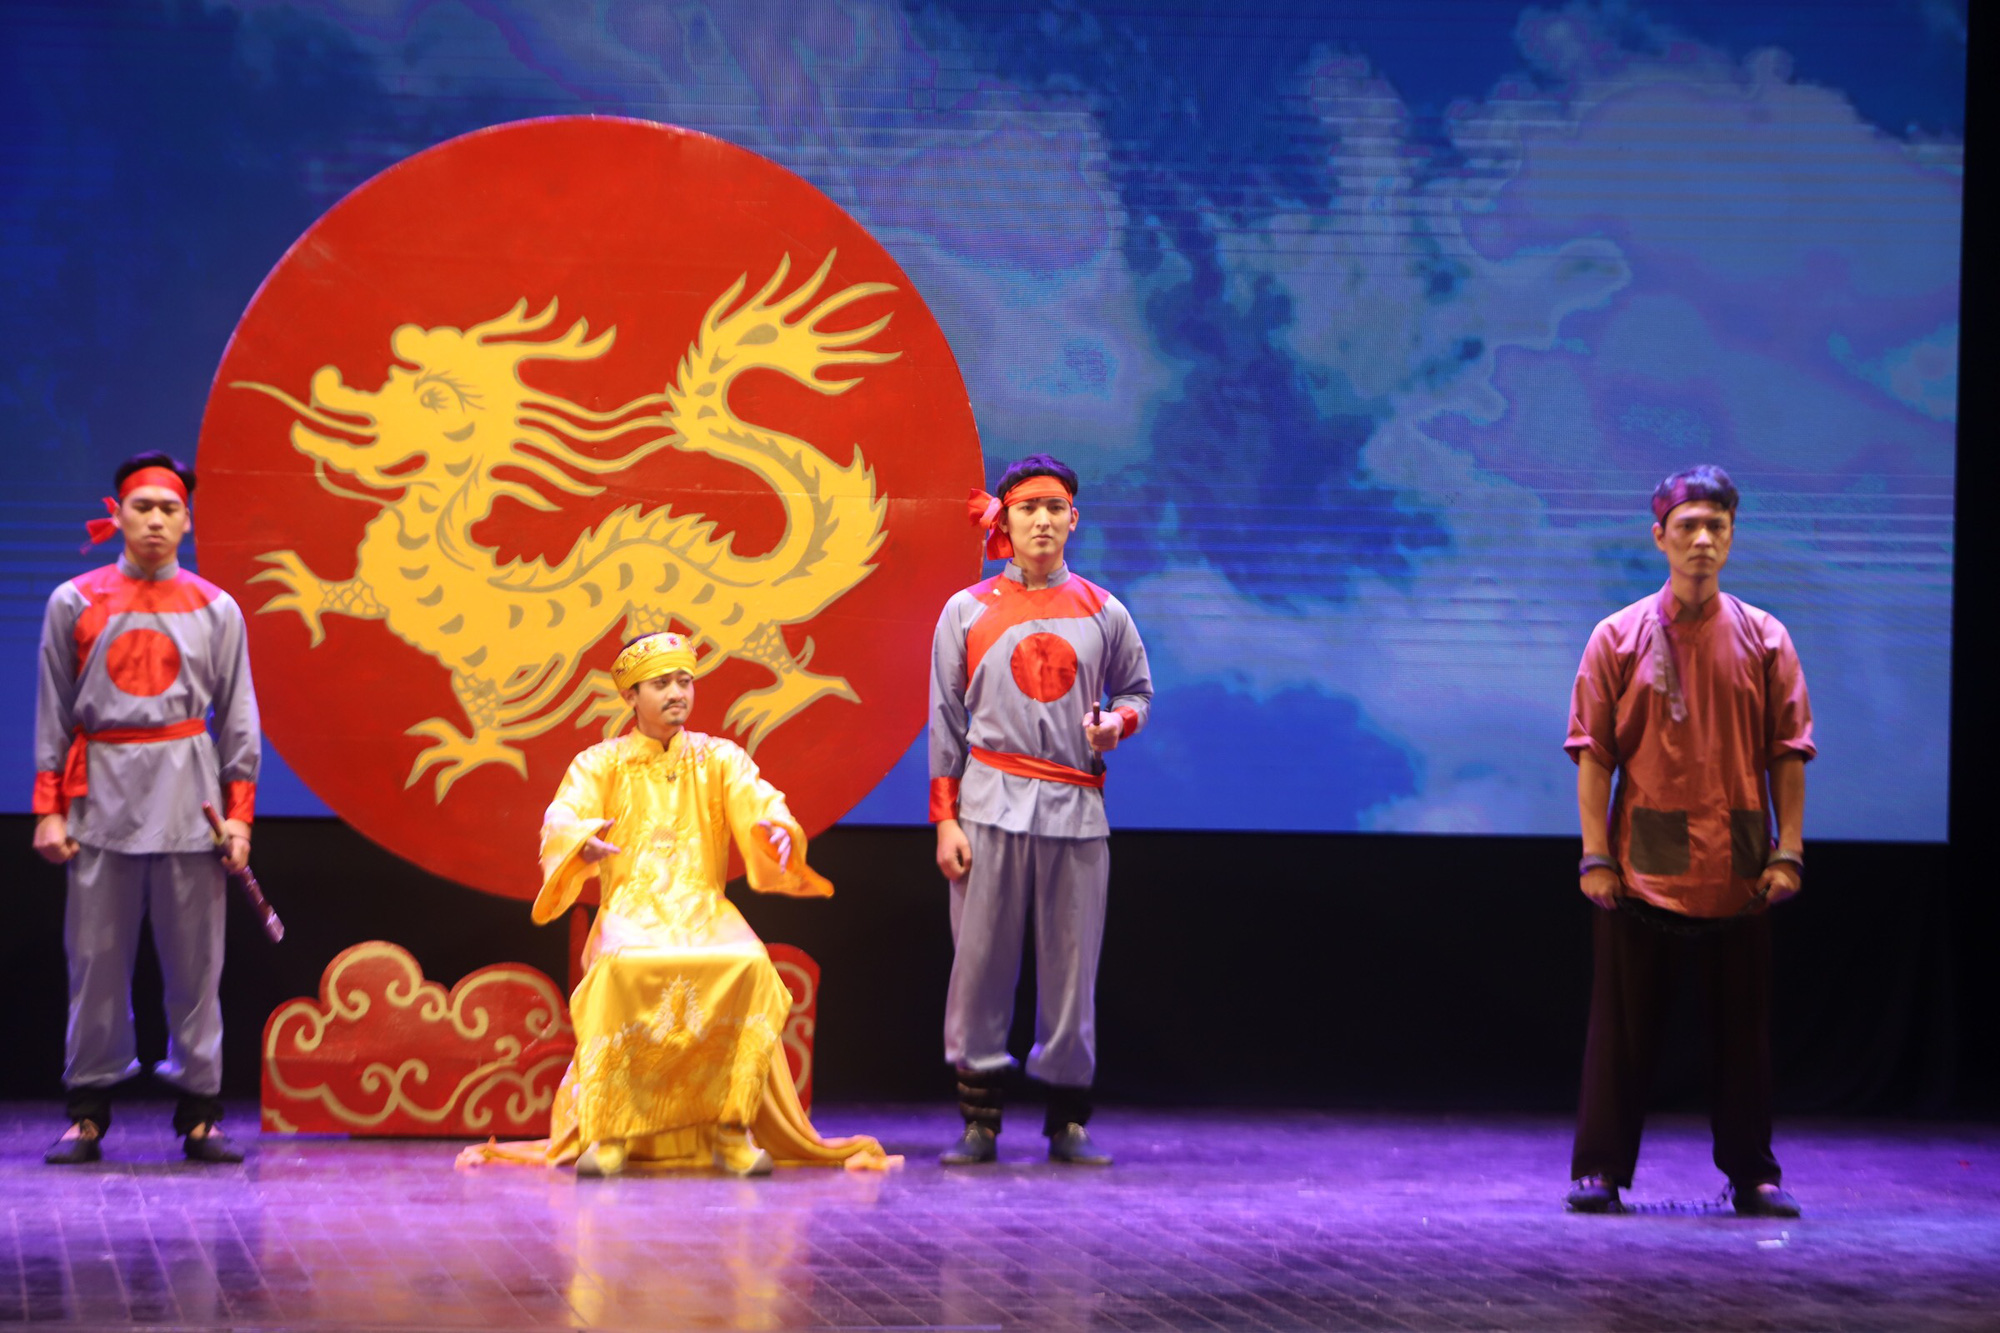 100 năm sân khấu kịch nói Việt Nam (kỳ 2): Xót xa nhìn kịch nói phủ một màu buồn - Ảnh 2.